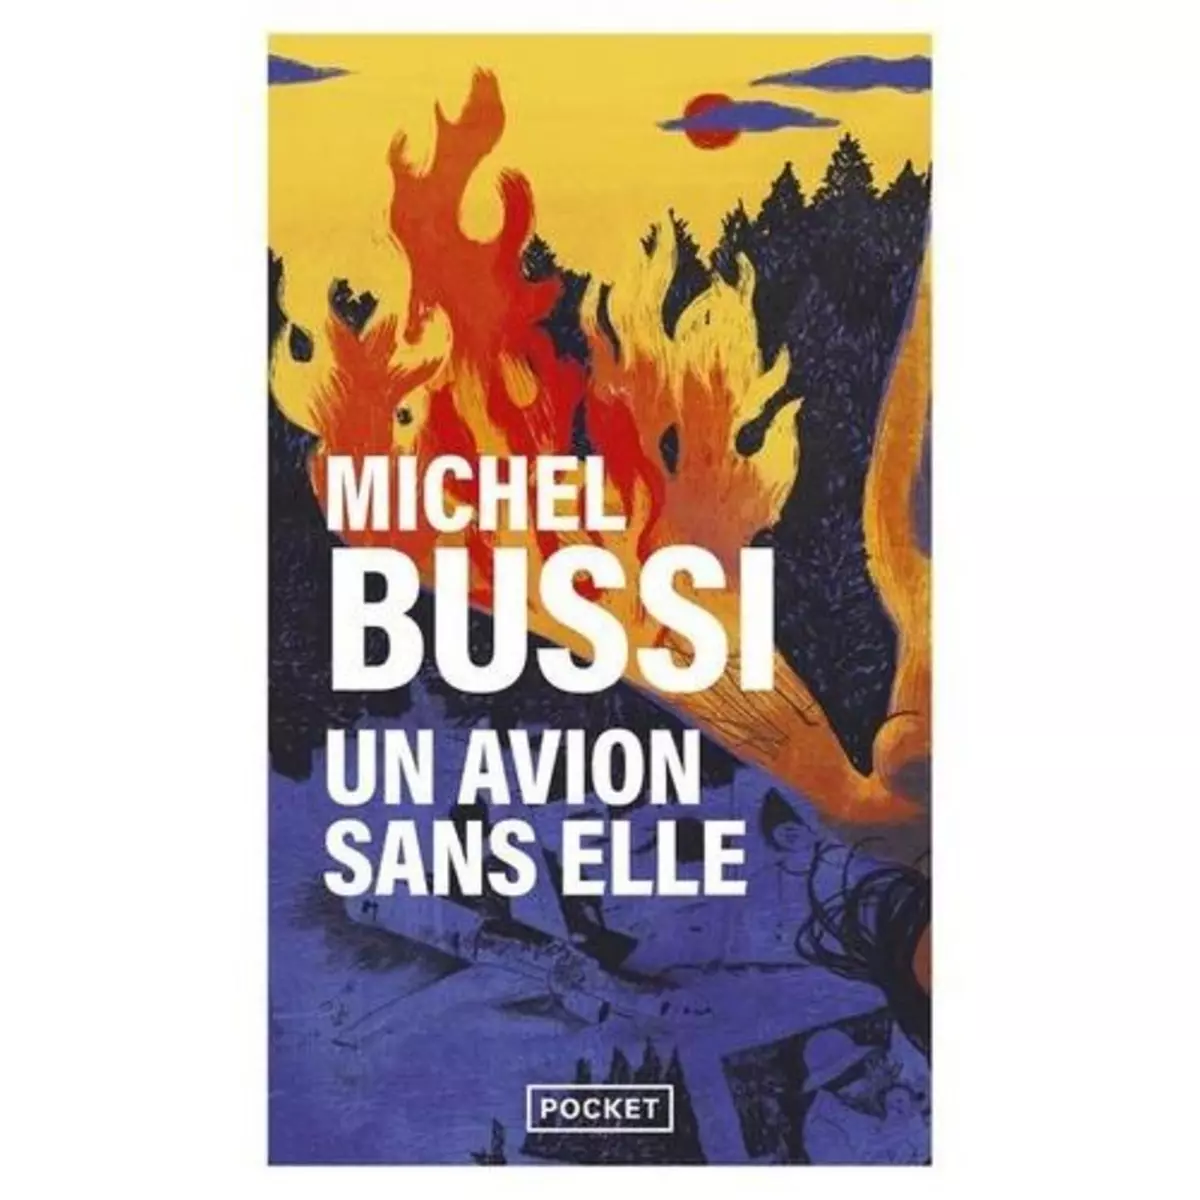  UN AVION SANS ELLE, Bussi Michel